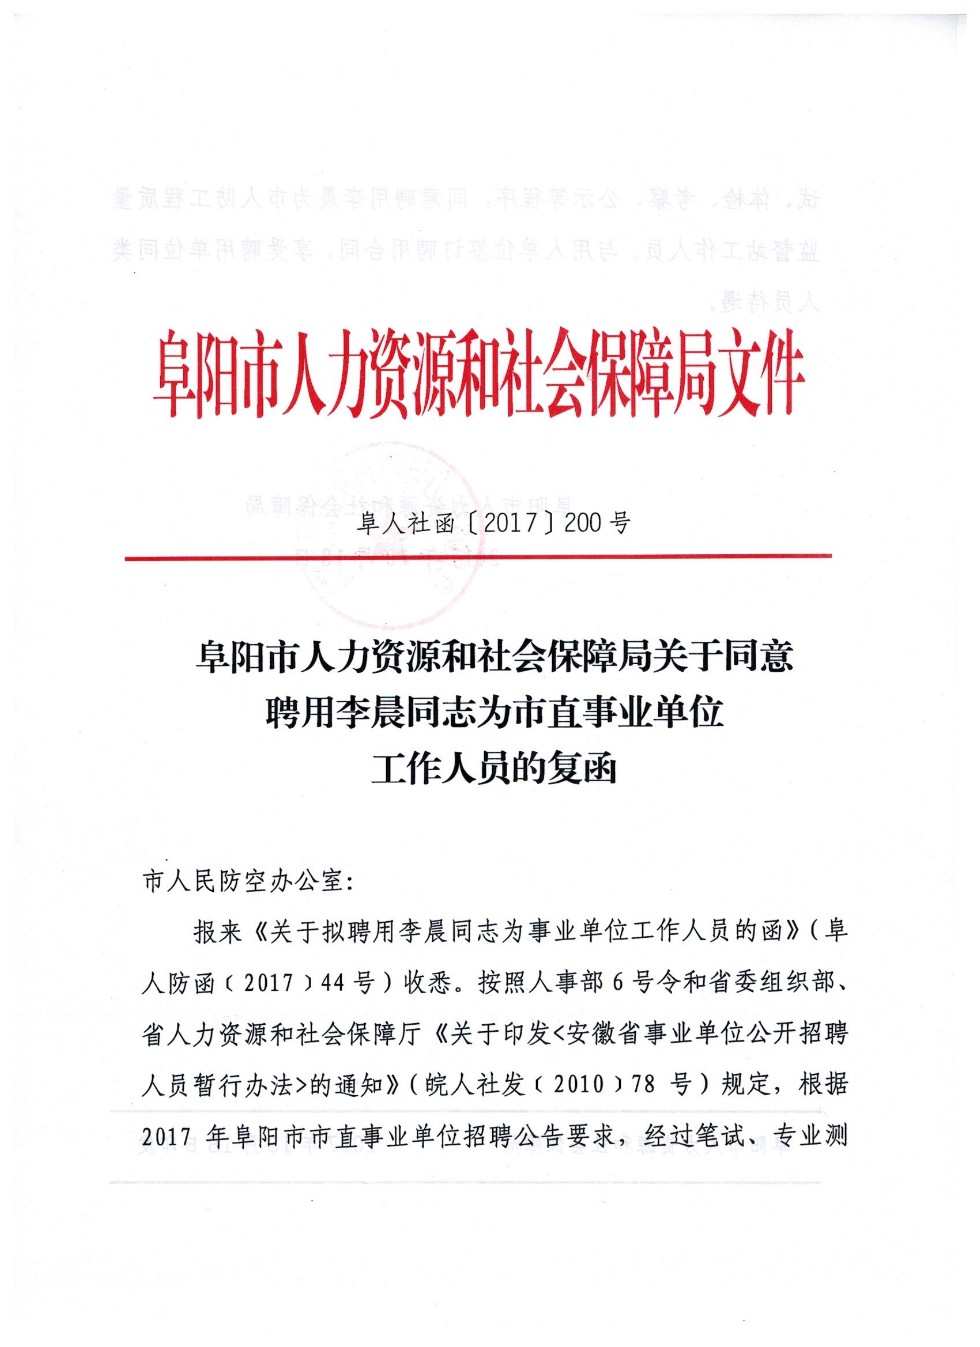 市人社局关于同意聘用李晨同志为市直事业单位工作人员的复函 001jpg